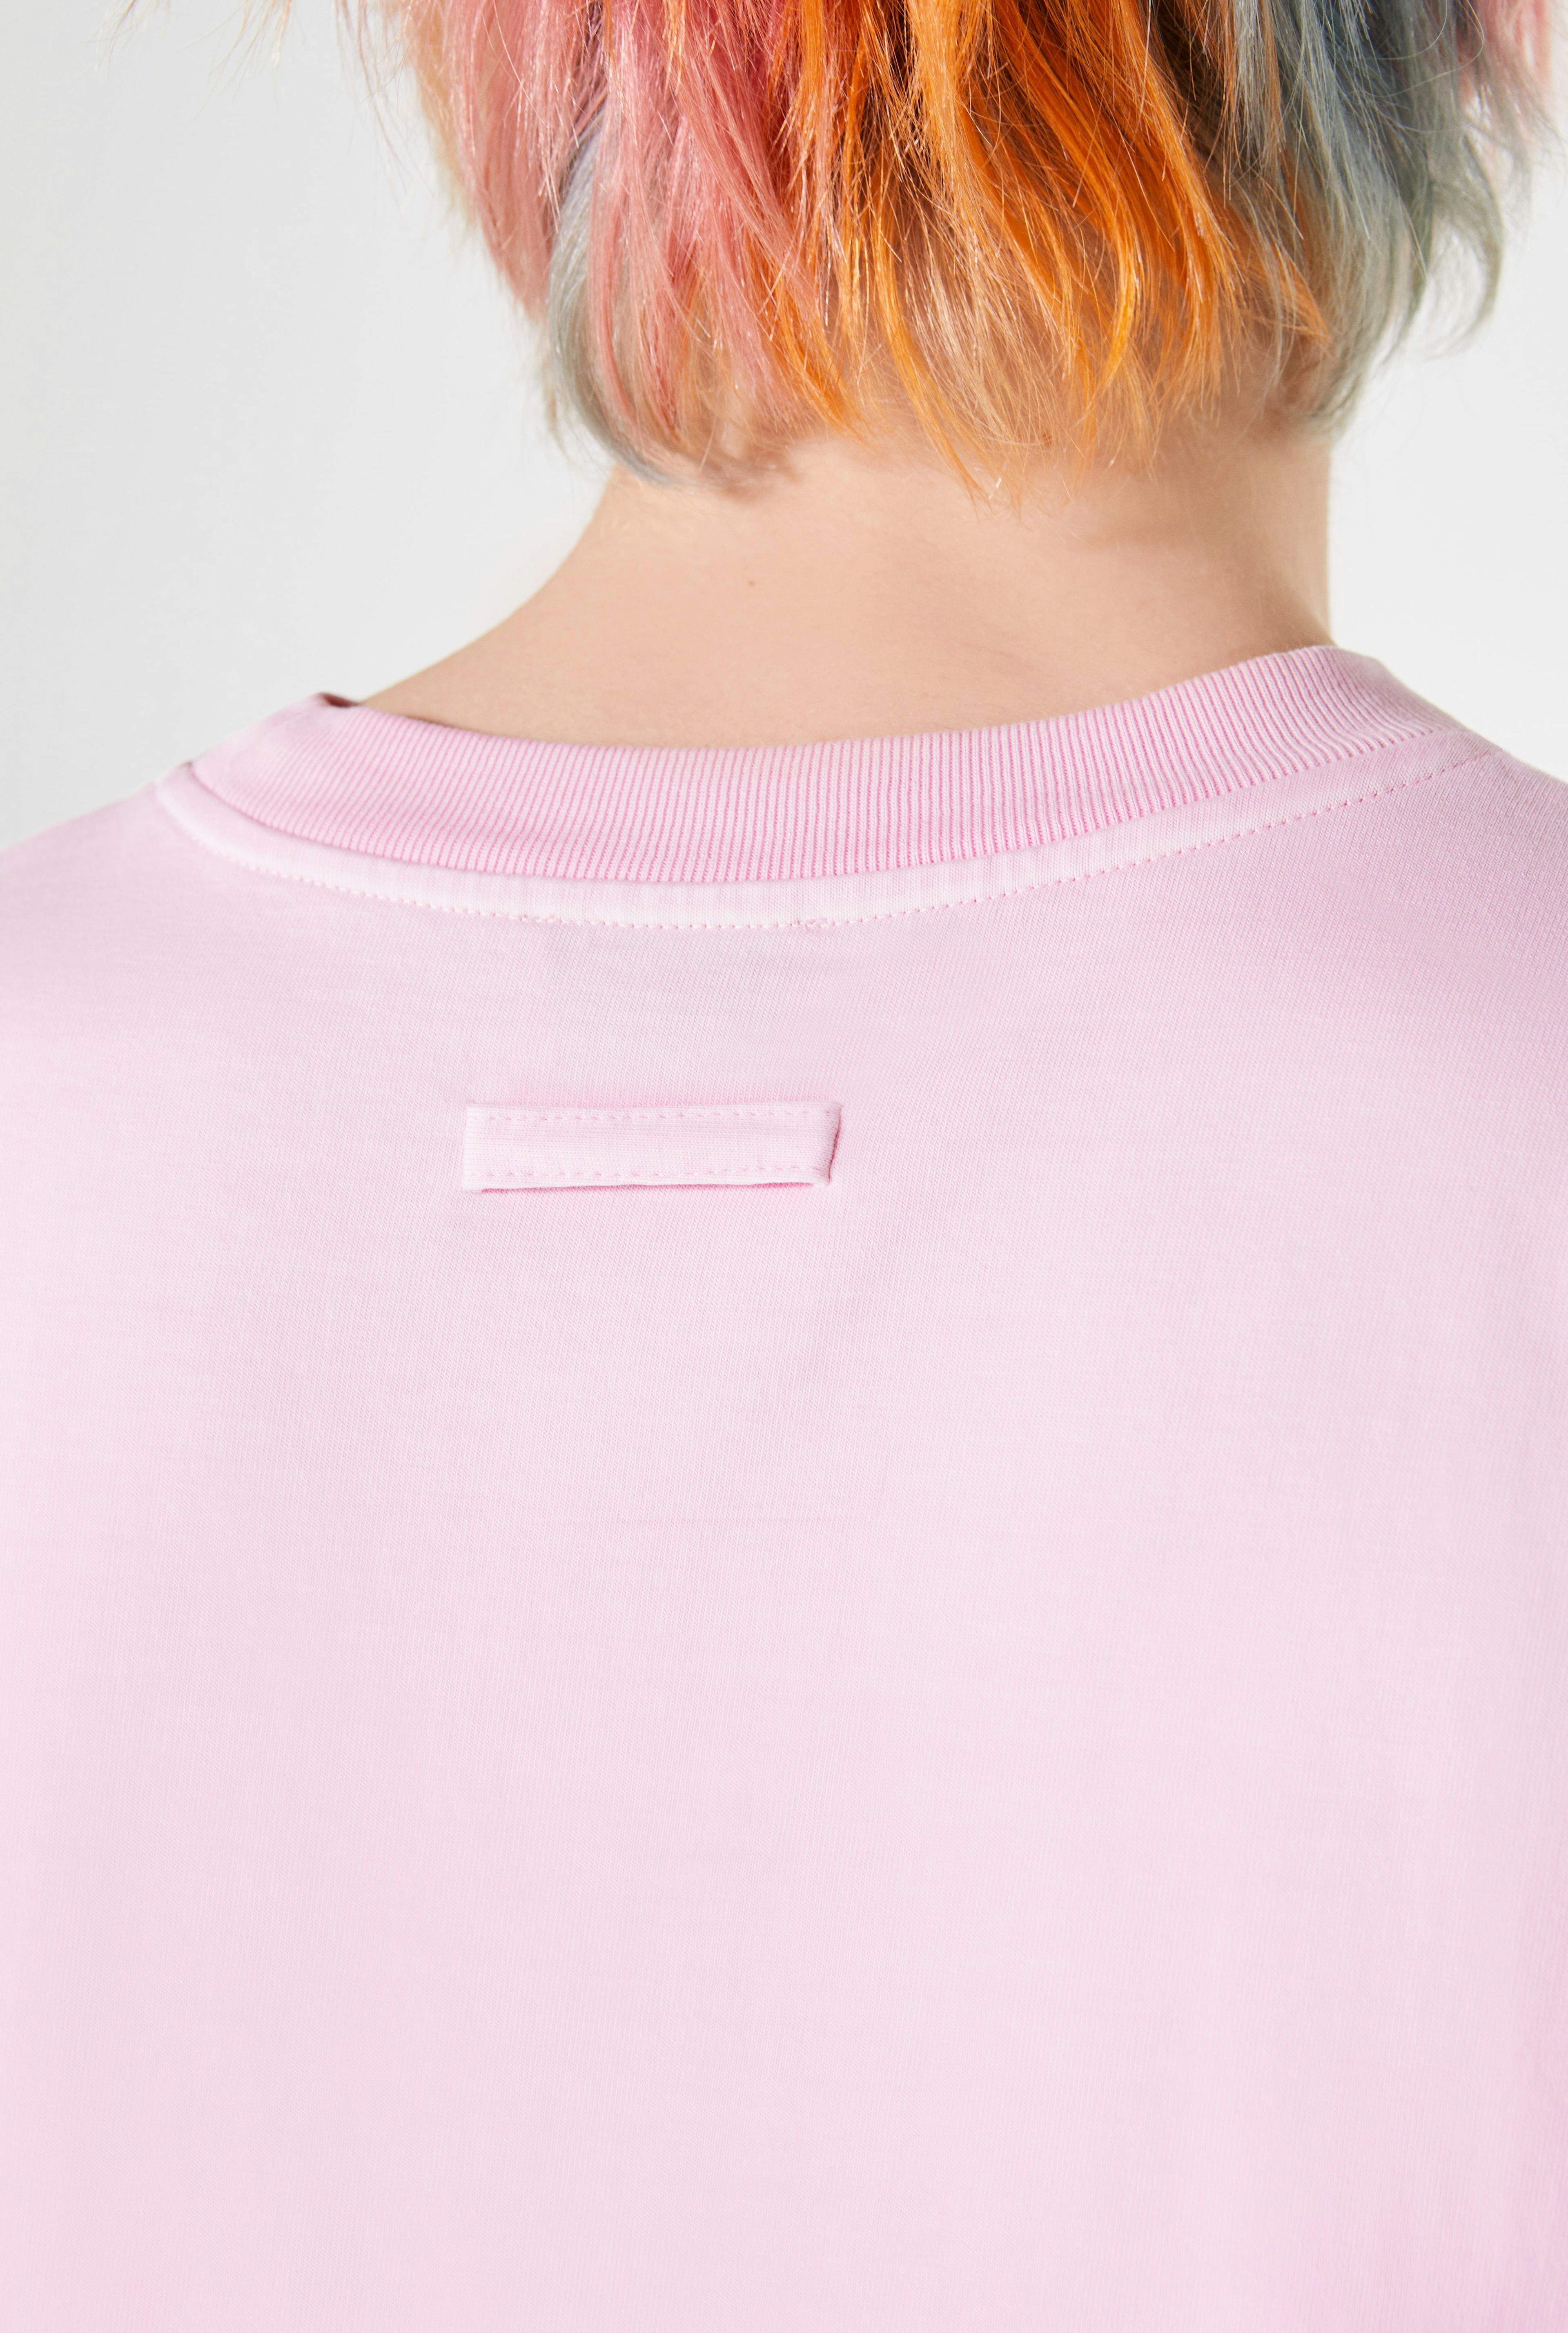 The Pink Évidemment T-Shirt